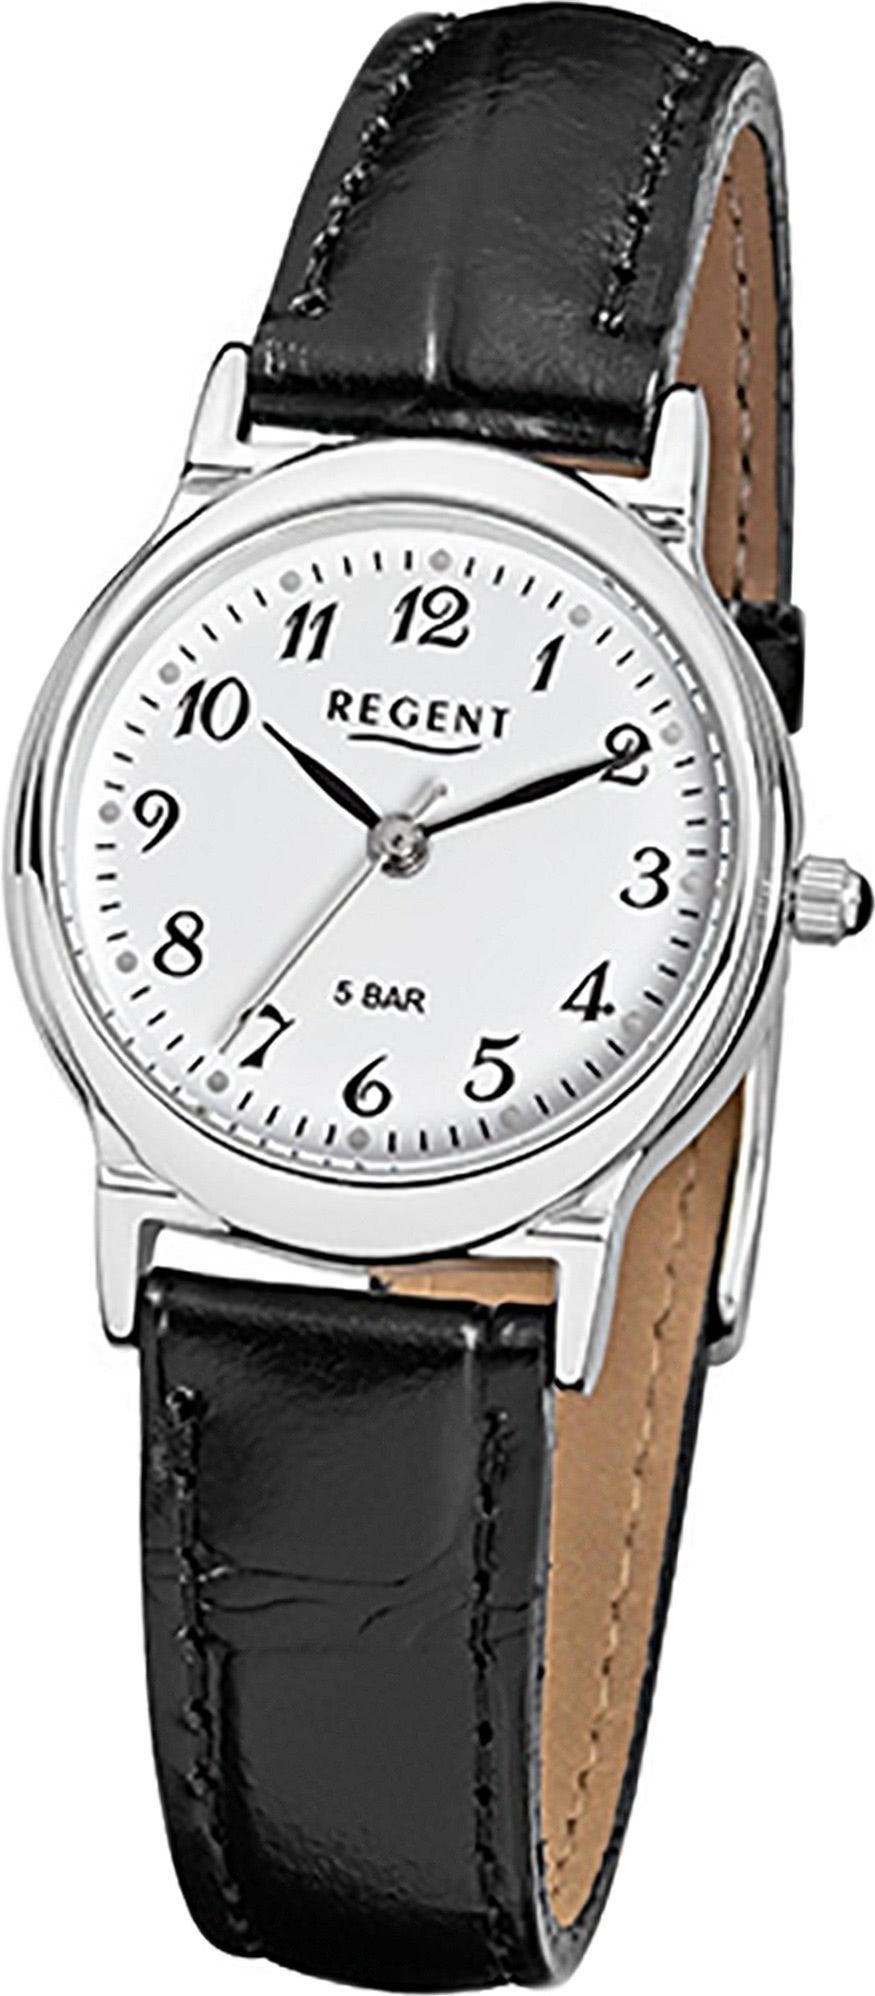 Regent Quarzuhr Regent Leder Damen Uhr F-013 Quarzuhr, Damenuhr Lederarmband schwarz, rundes Gehäuse, klein (ca. 27mm)